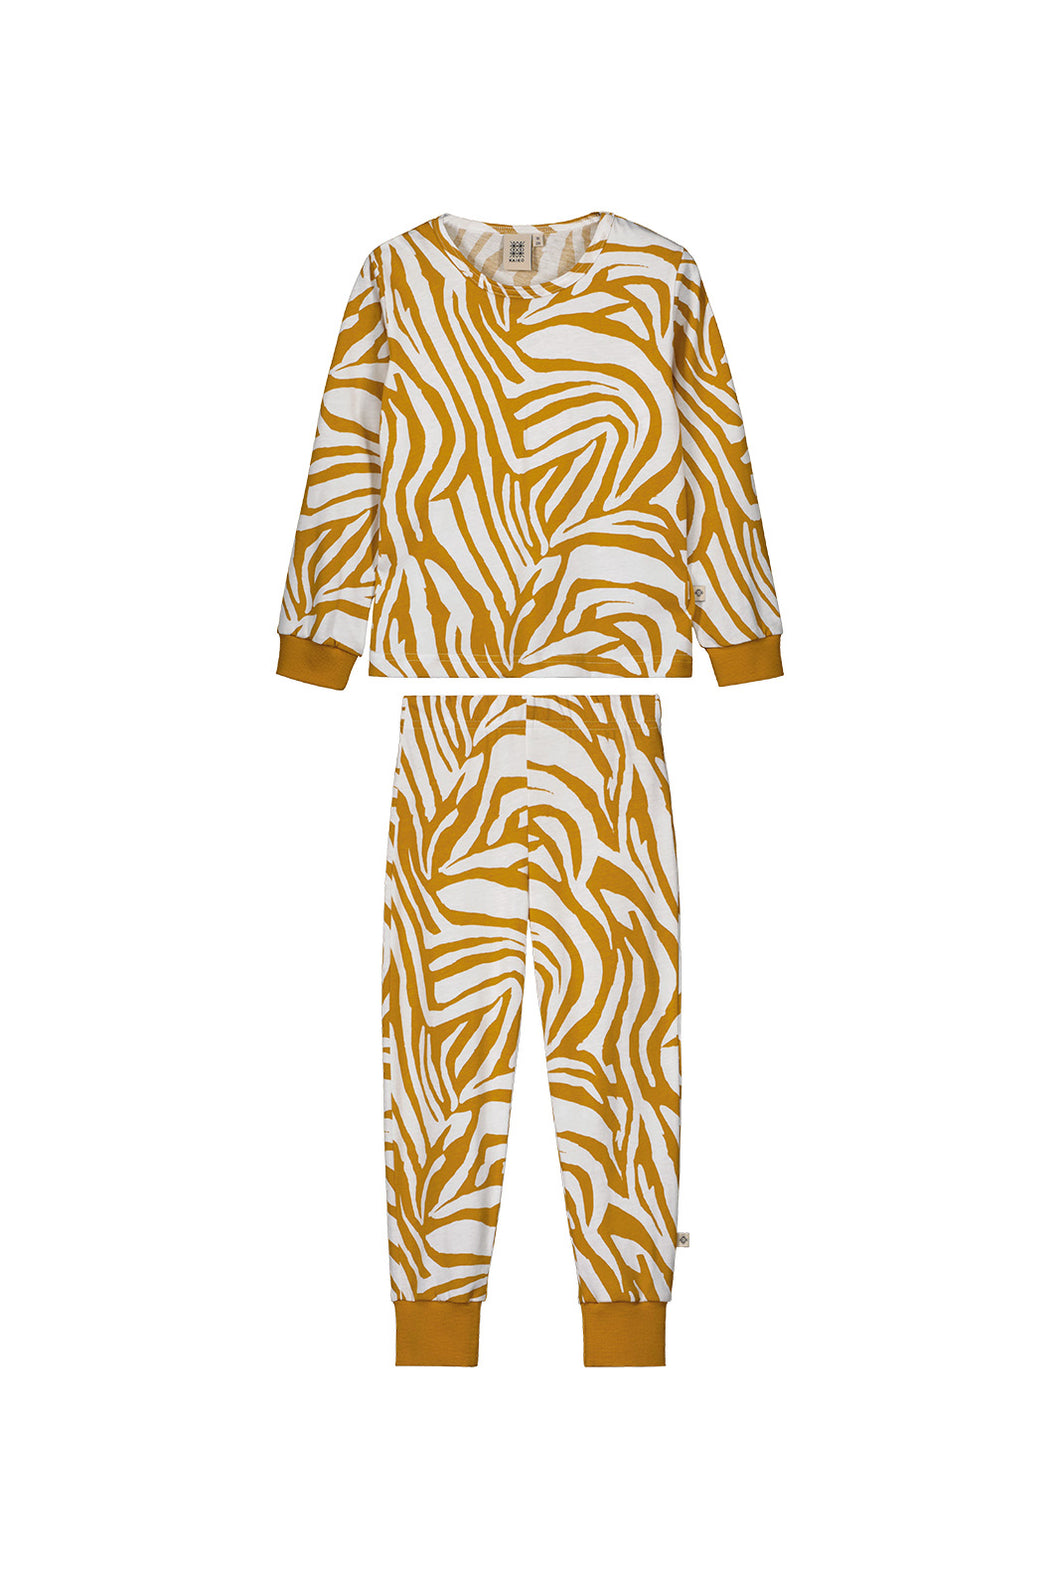 Kaiko Pyjama Set, Zebra Toffee